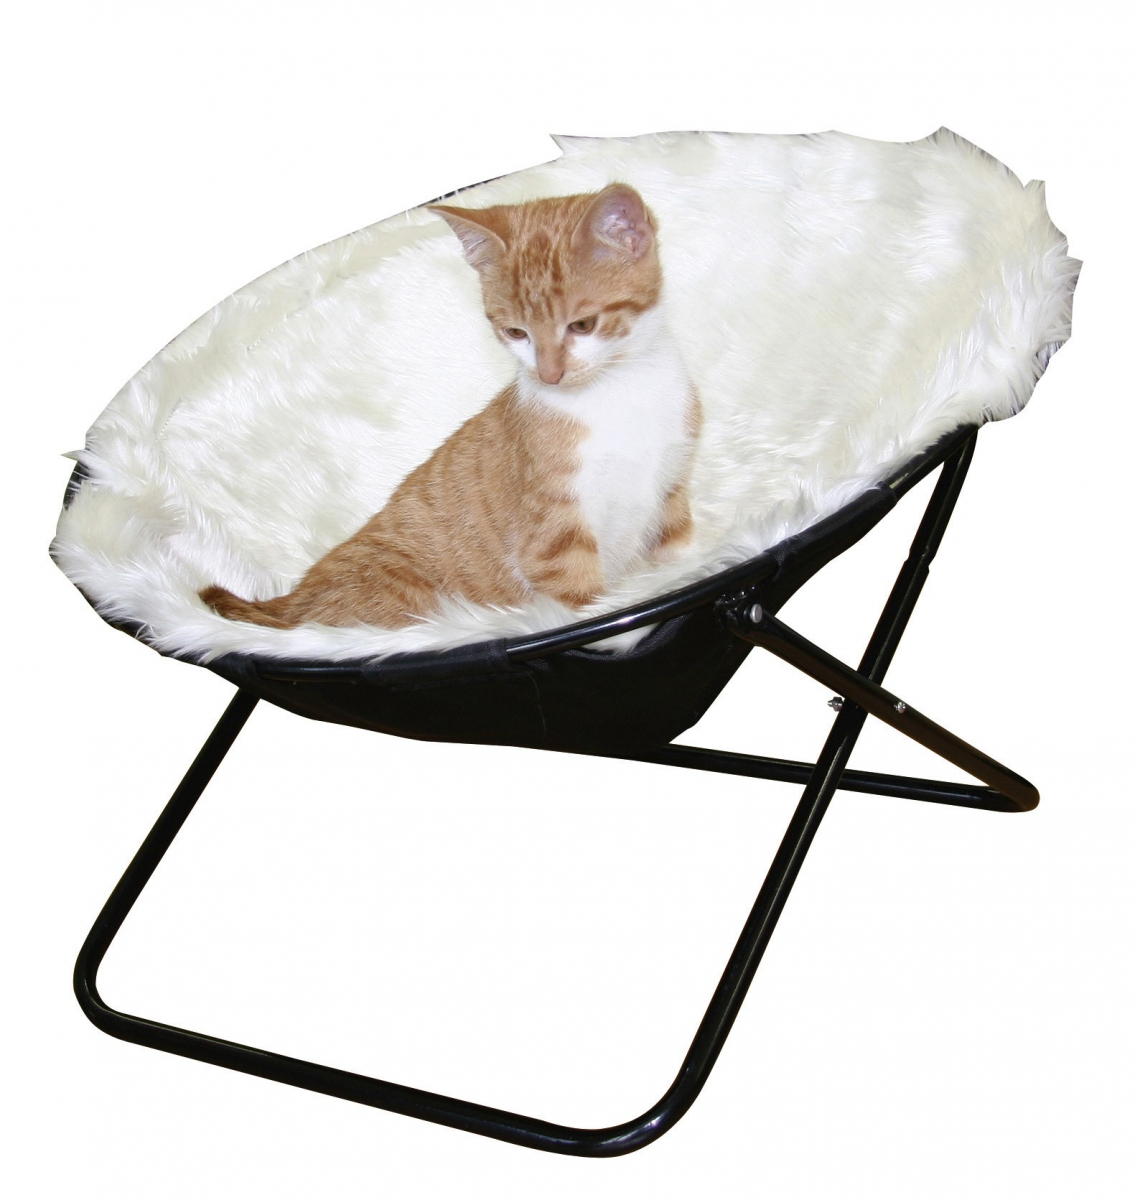 Comment fabriquer un panier ou un lit pour chat ? - Marie Claire